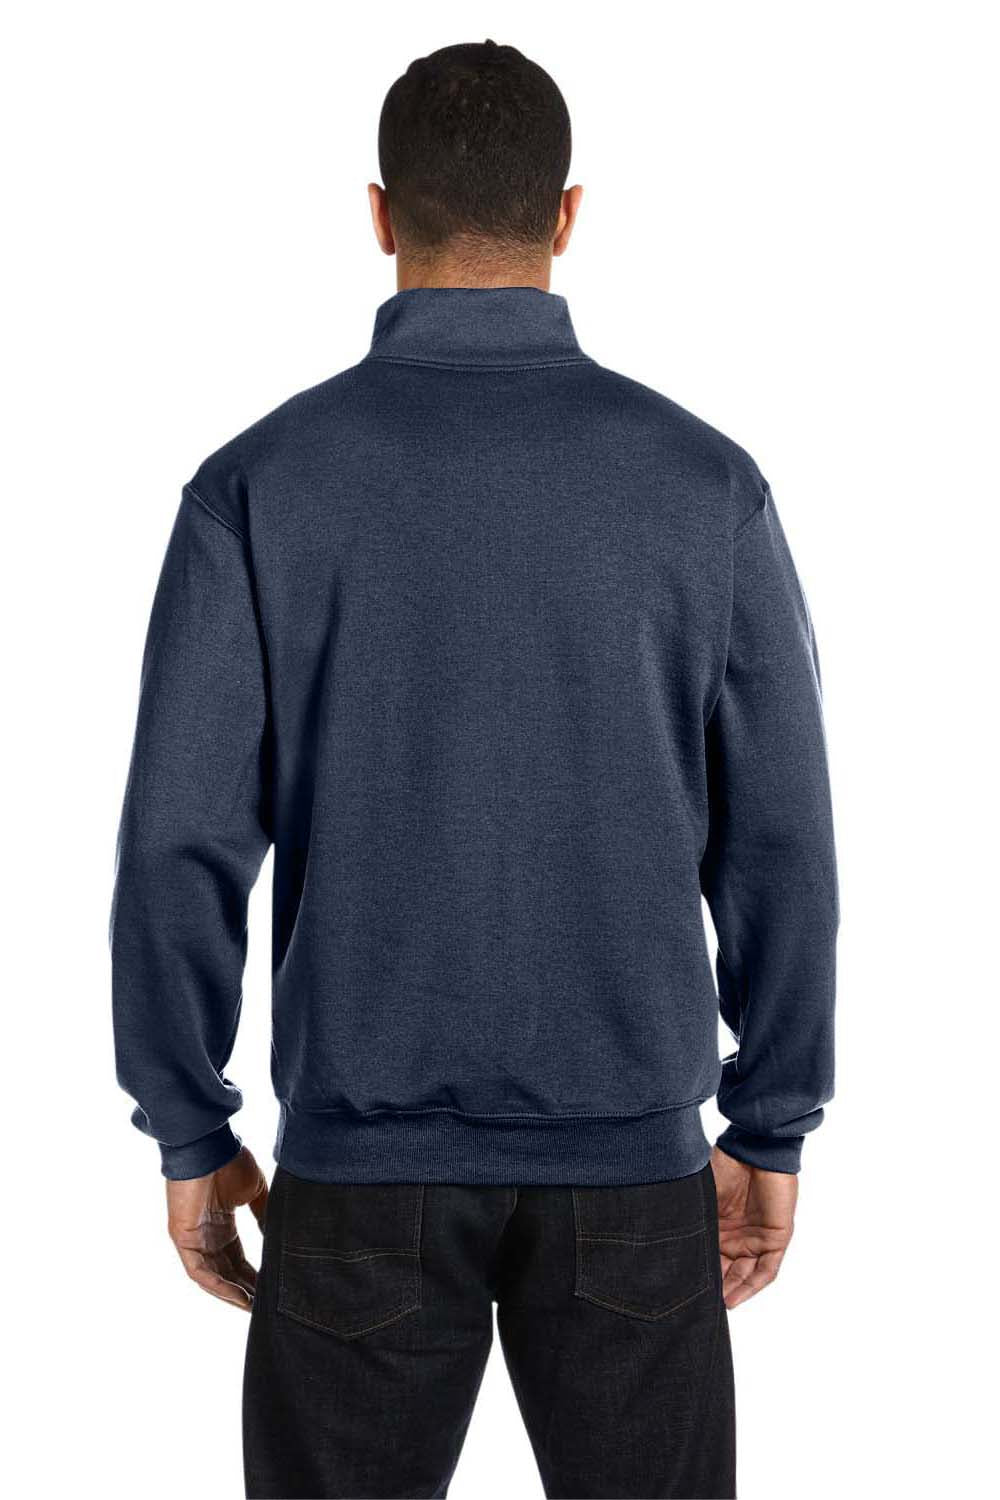 Jerzees 995M Mens NuBlend Fleece 1/4 Zip Sweatshirt Heather Navy Blue Back